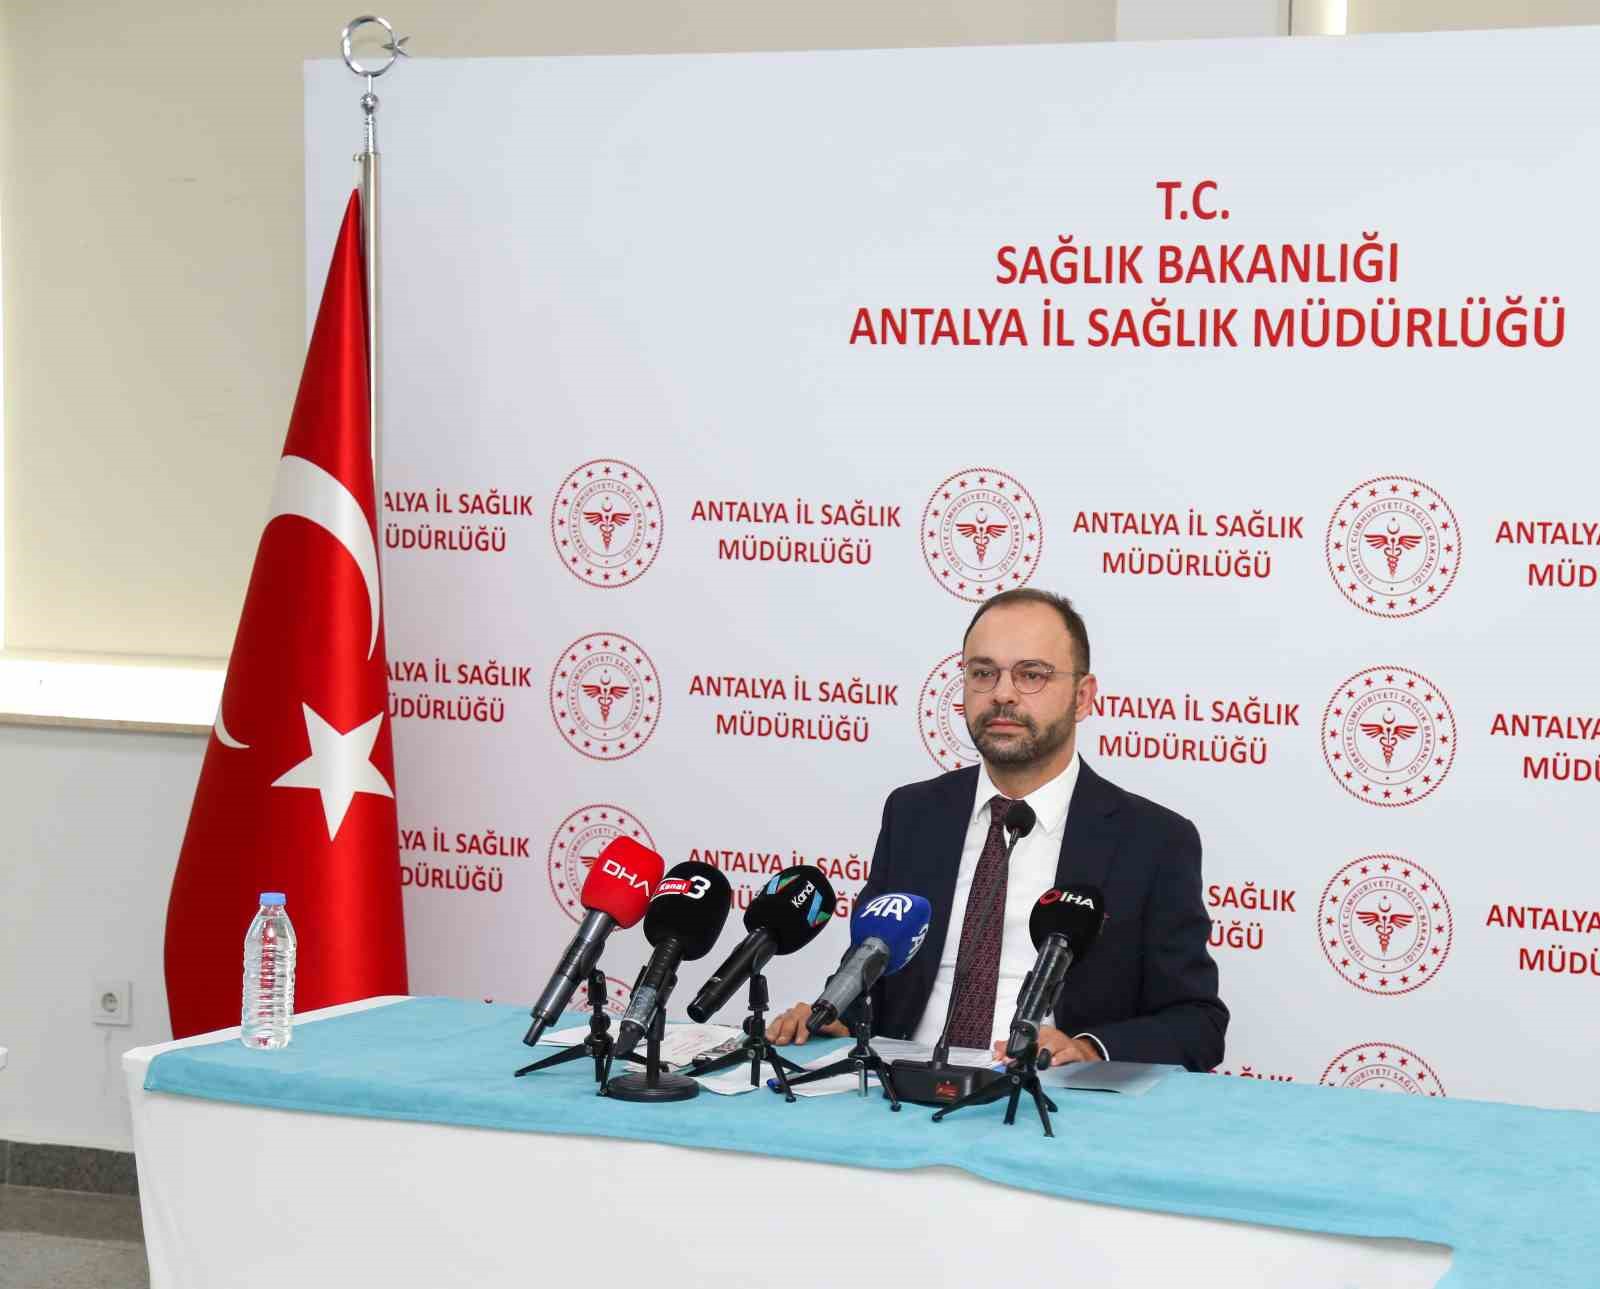 Burdur'dan Antalya'ya sevk edilen 23 hastadan 3'ü entübe İhlas Haber Ajansı